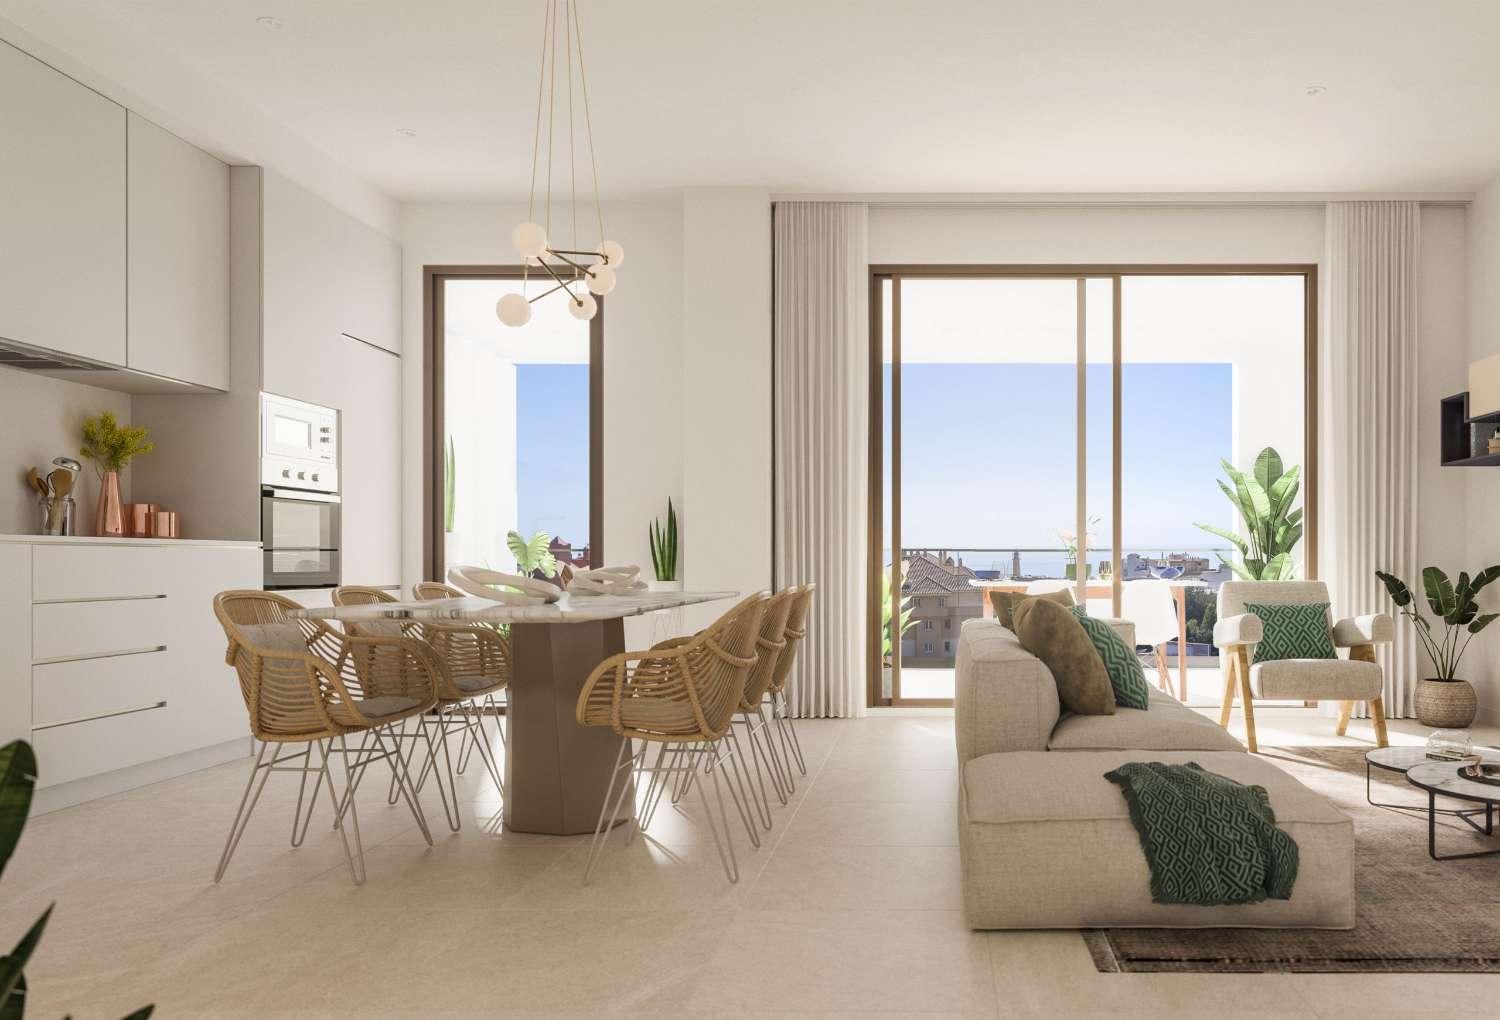 2 eller 3 soverom, 2 bad og en terrasse med utsikt over havet – fra € 218.000